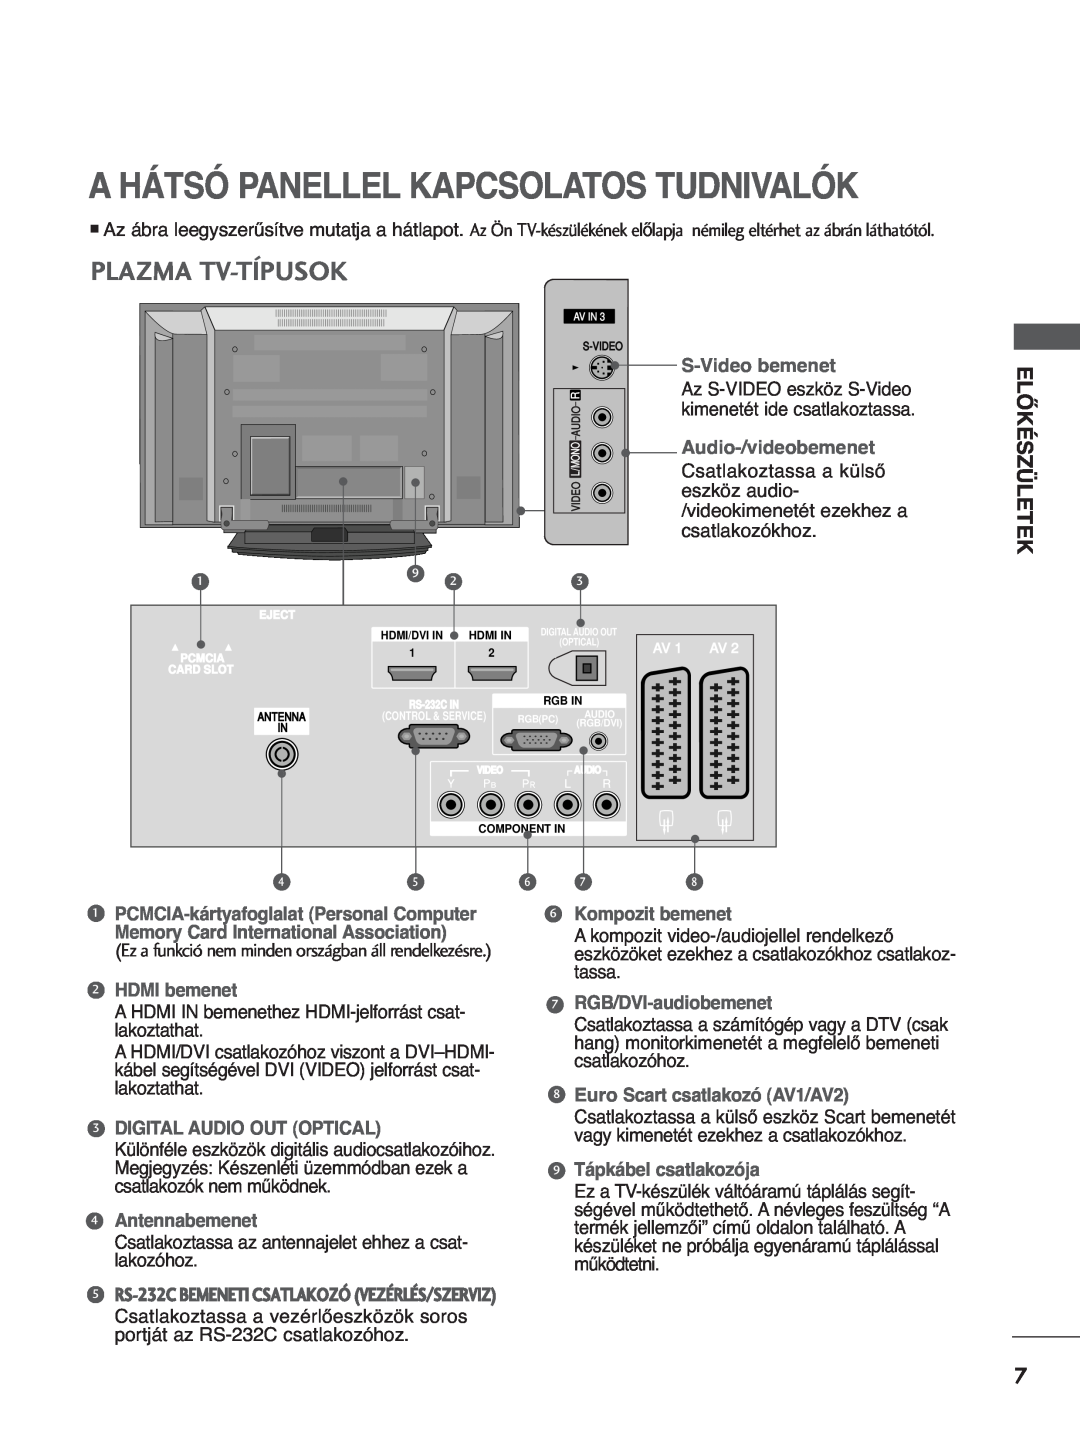 LG Electronics 4422LLTT77 manual A Hátsó Panellel Kapcsolatos Tudnivalók, Plazma Tv-Típusok, Előkészületek, S-Video bemenet 